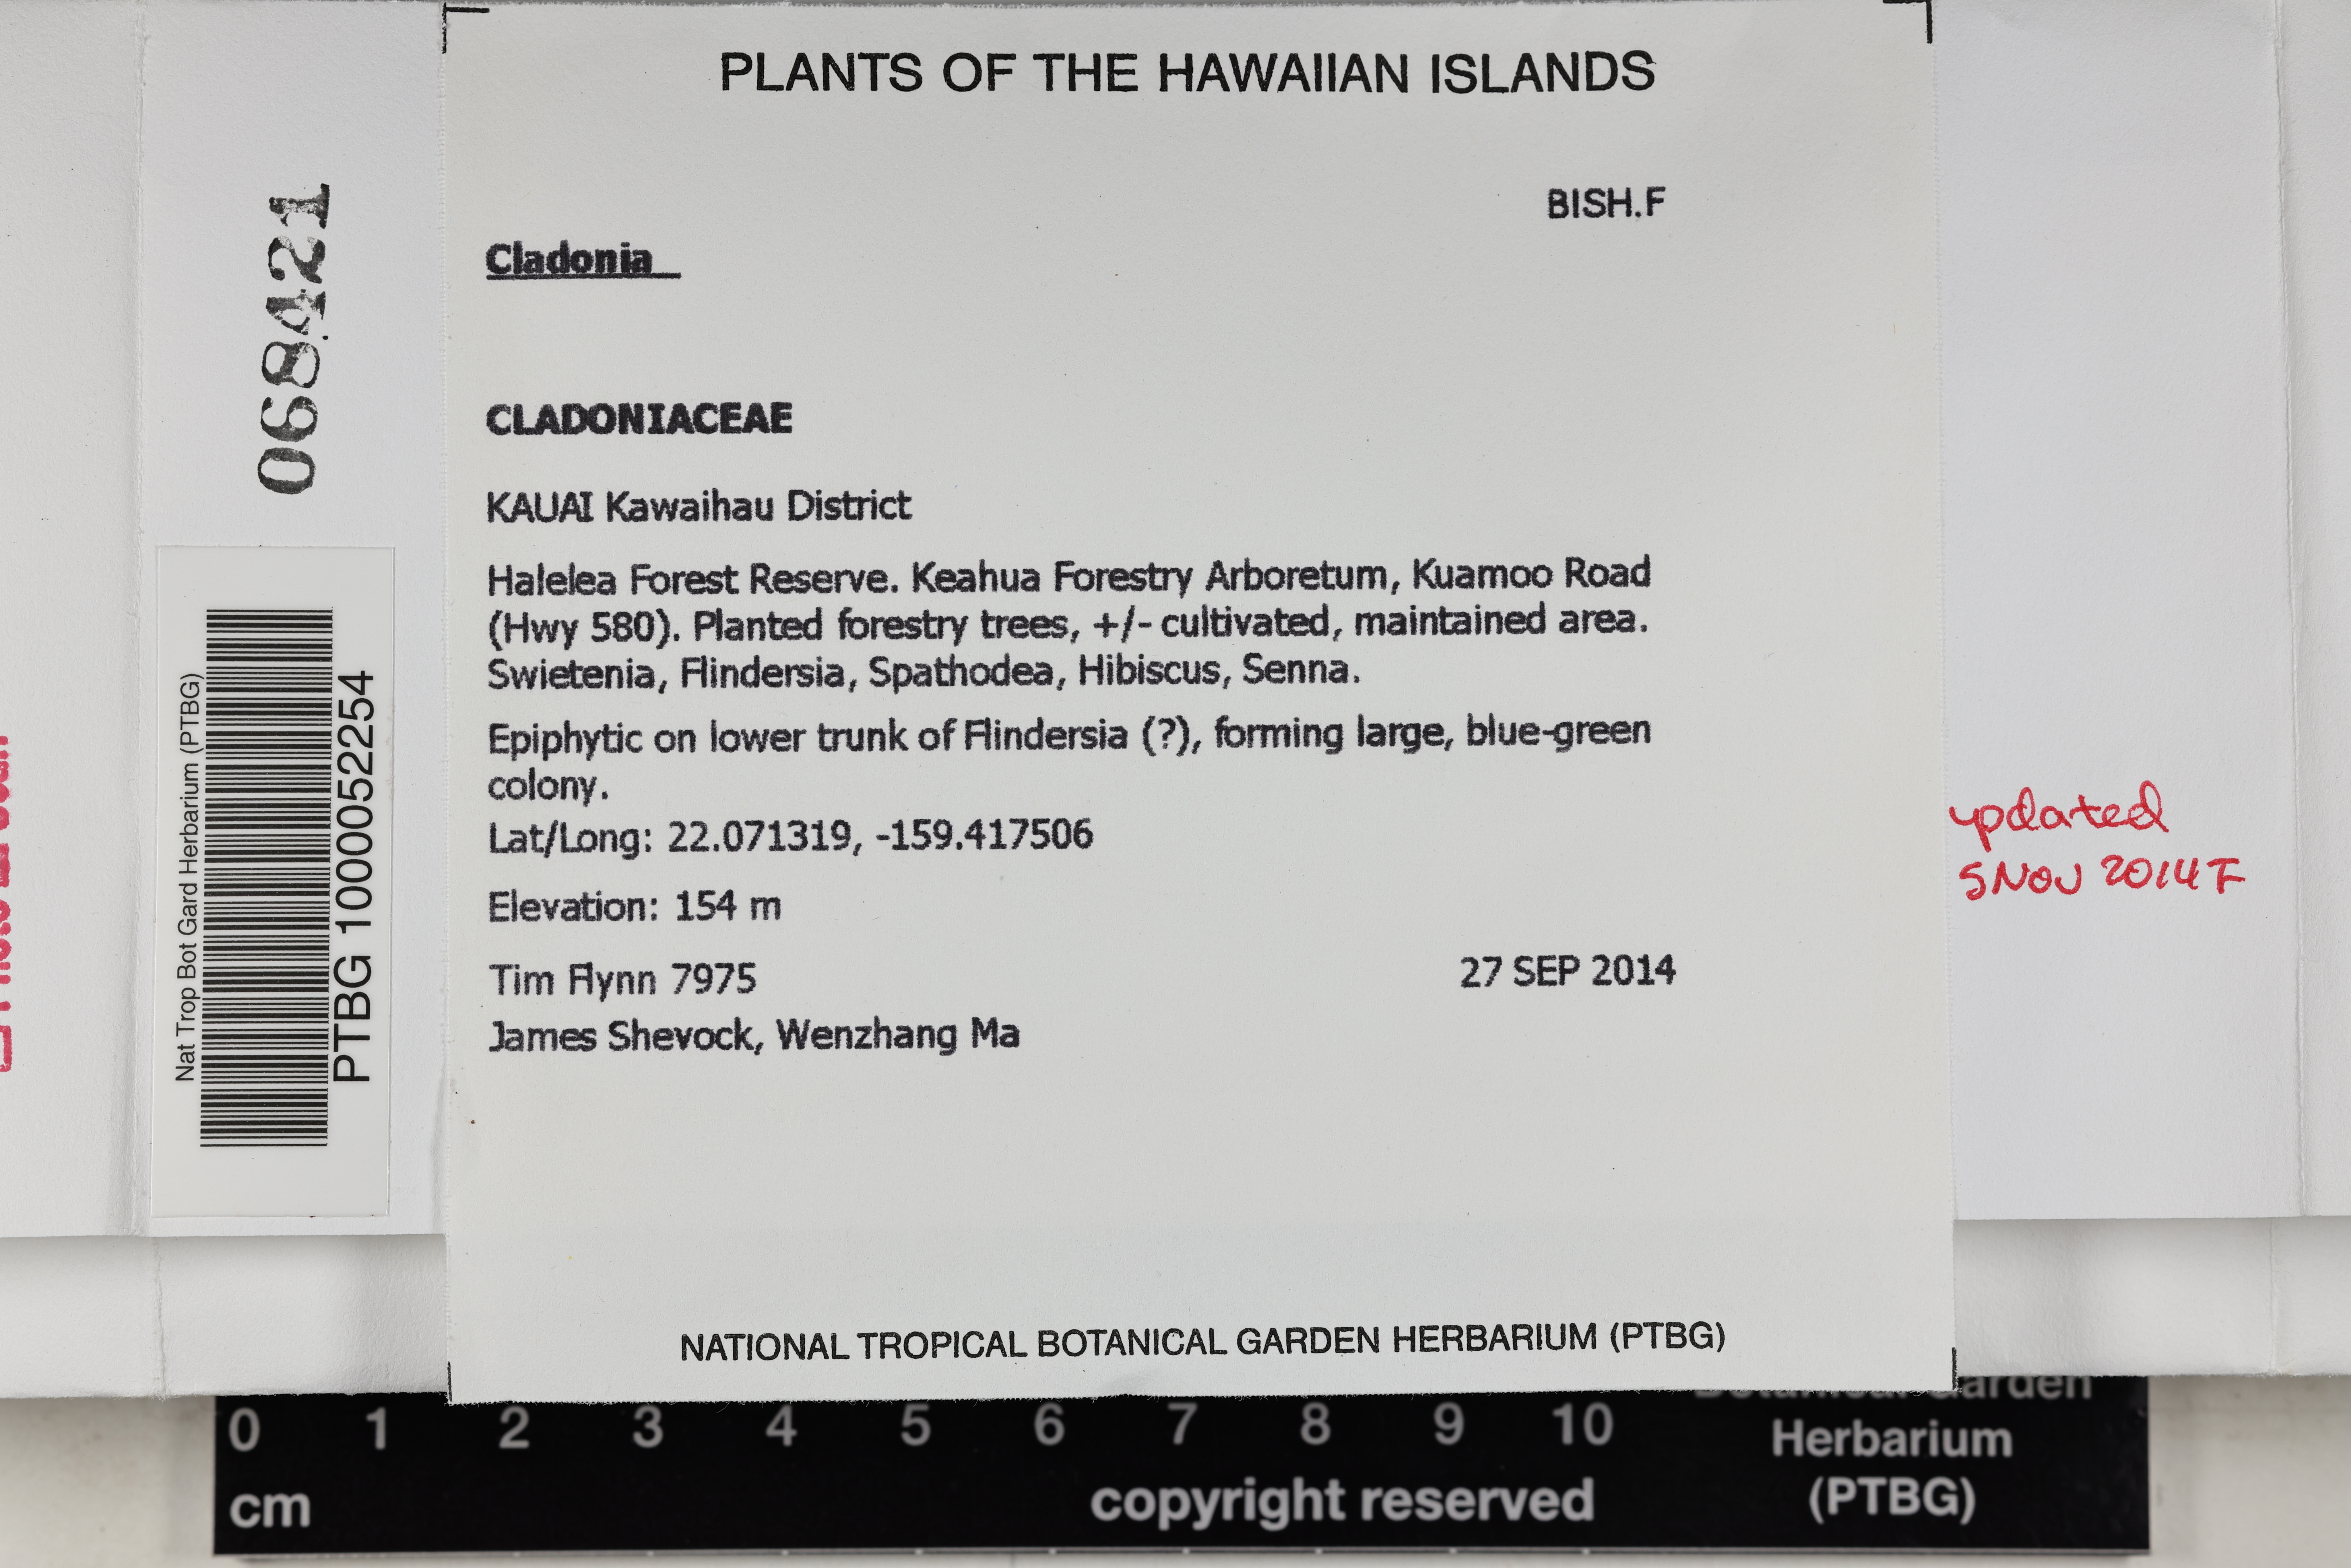 Cladoniaceae image